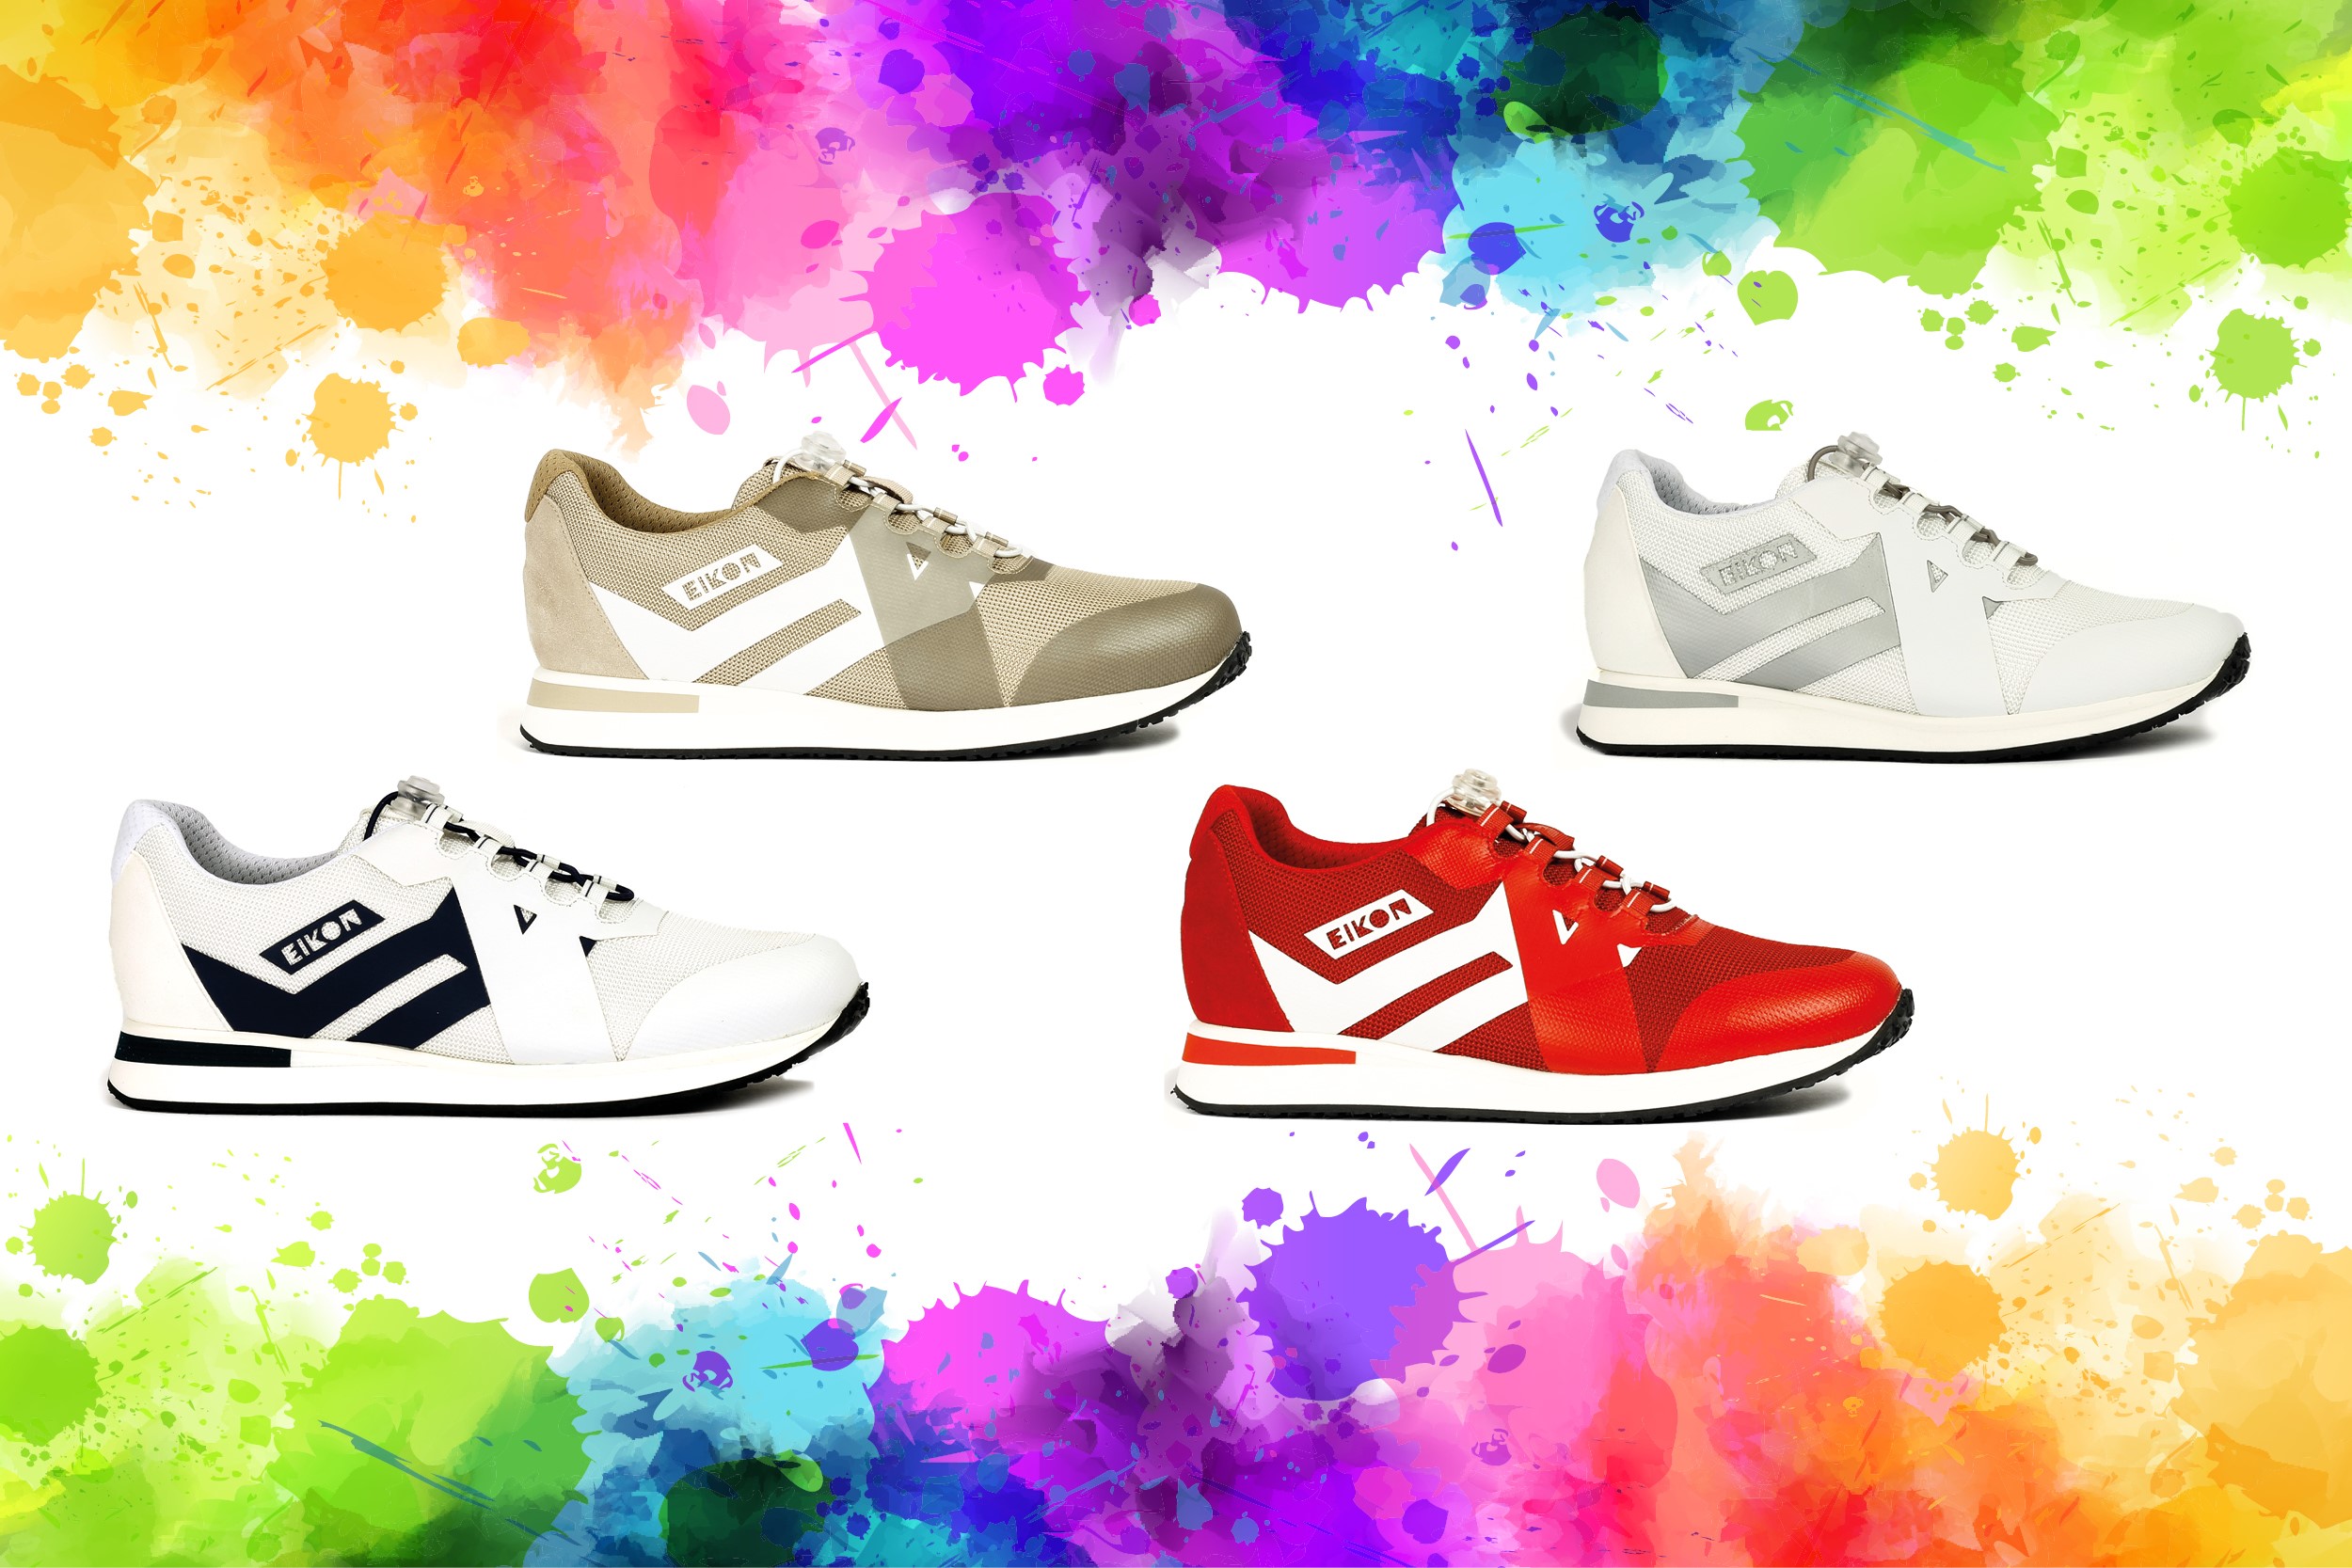 Chaussures Eikon : 4 nouvelles couleurs pour marcher en toute légèreté vers l’été 